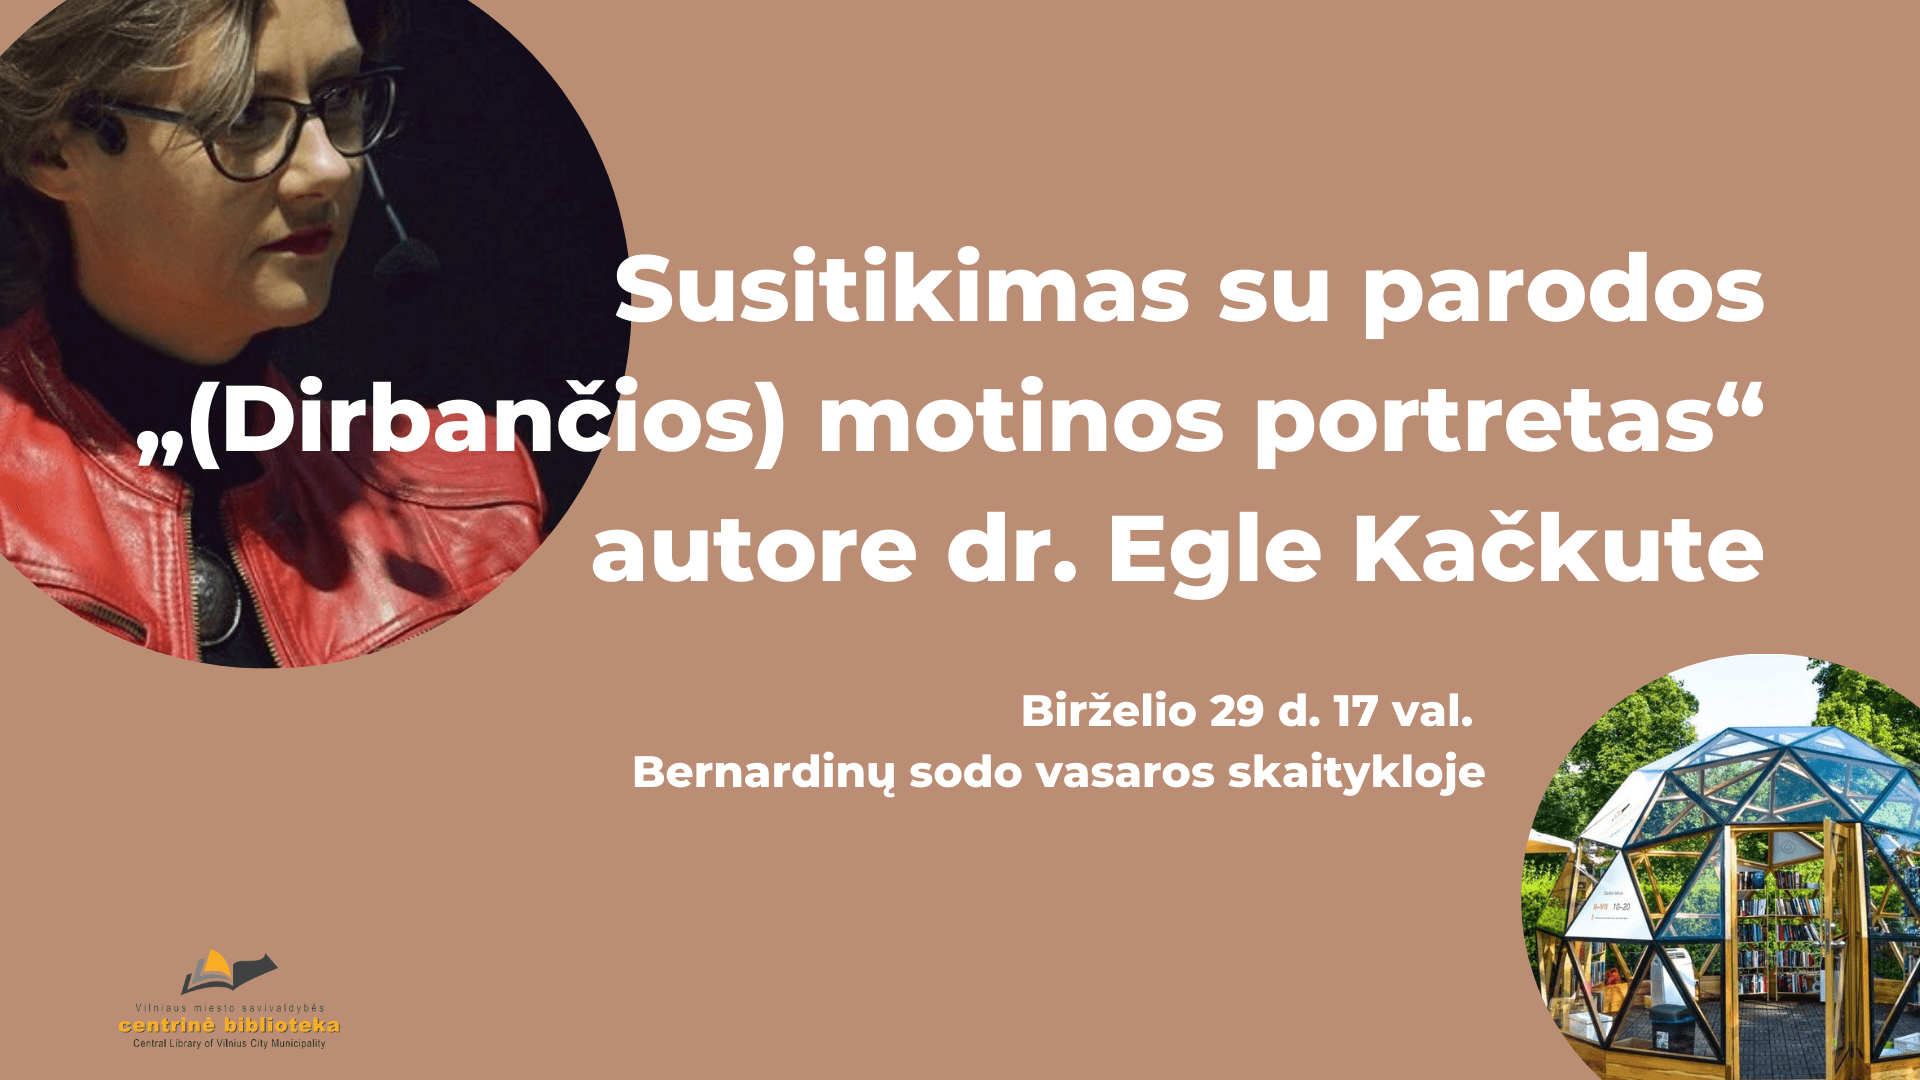 Susitikimas su parodos „(Dirbančios) motinos portretas“ autore dr. Egle Kačkute